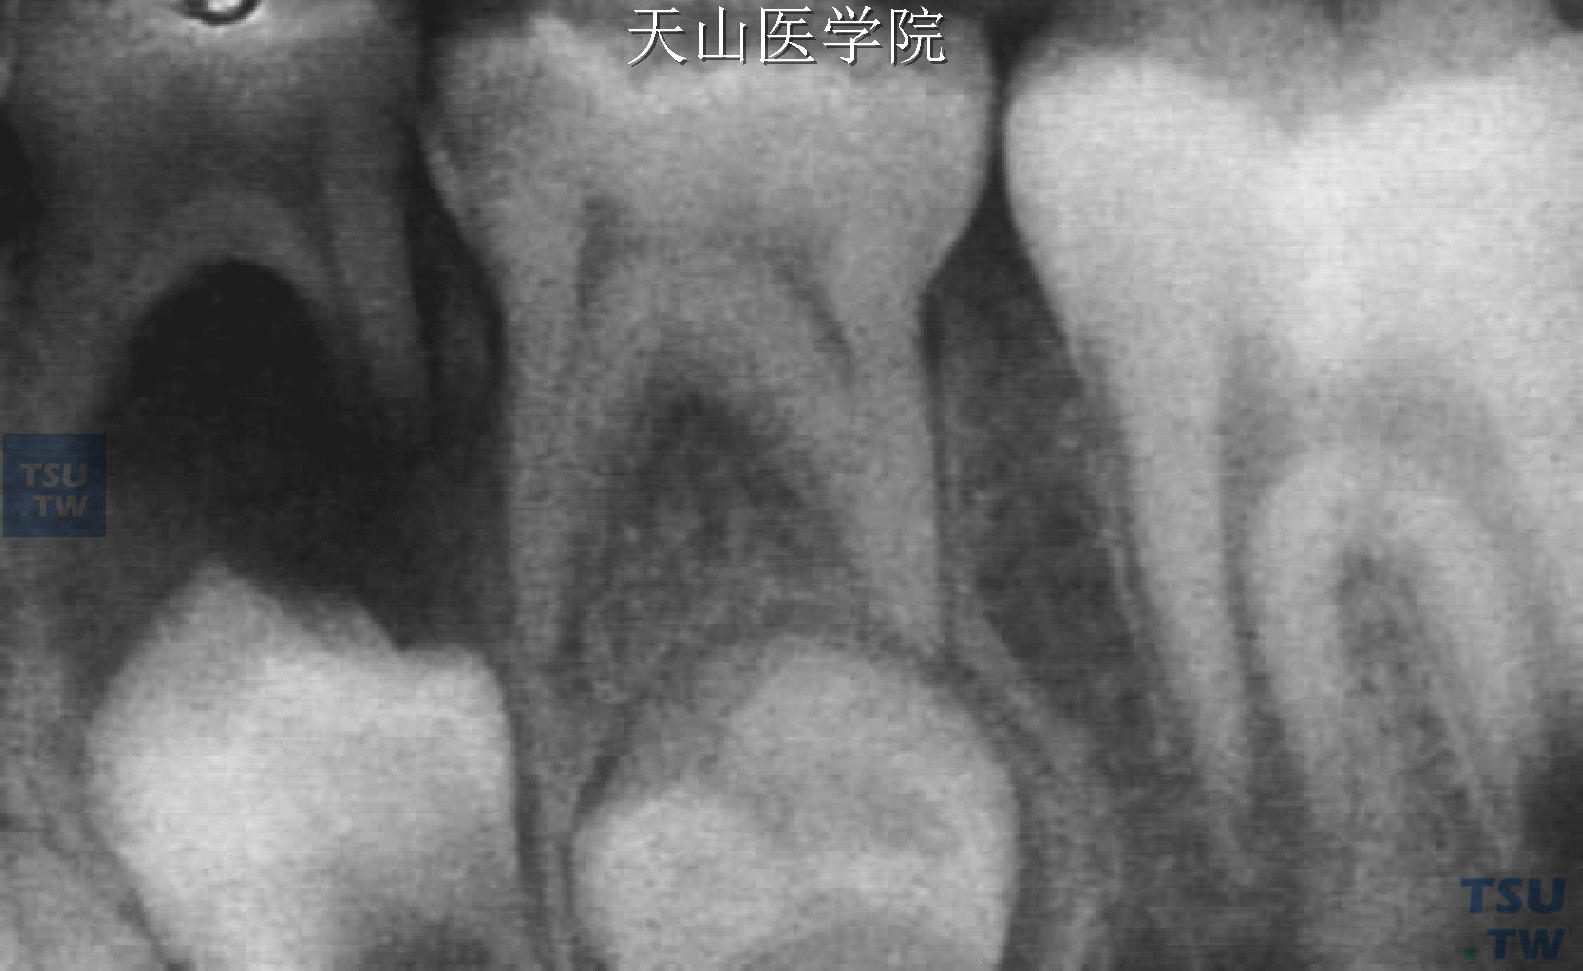 X线片显示第一乳磨牙根尖周病累及其下恒牙胚